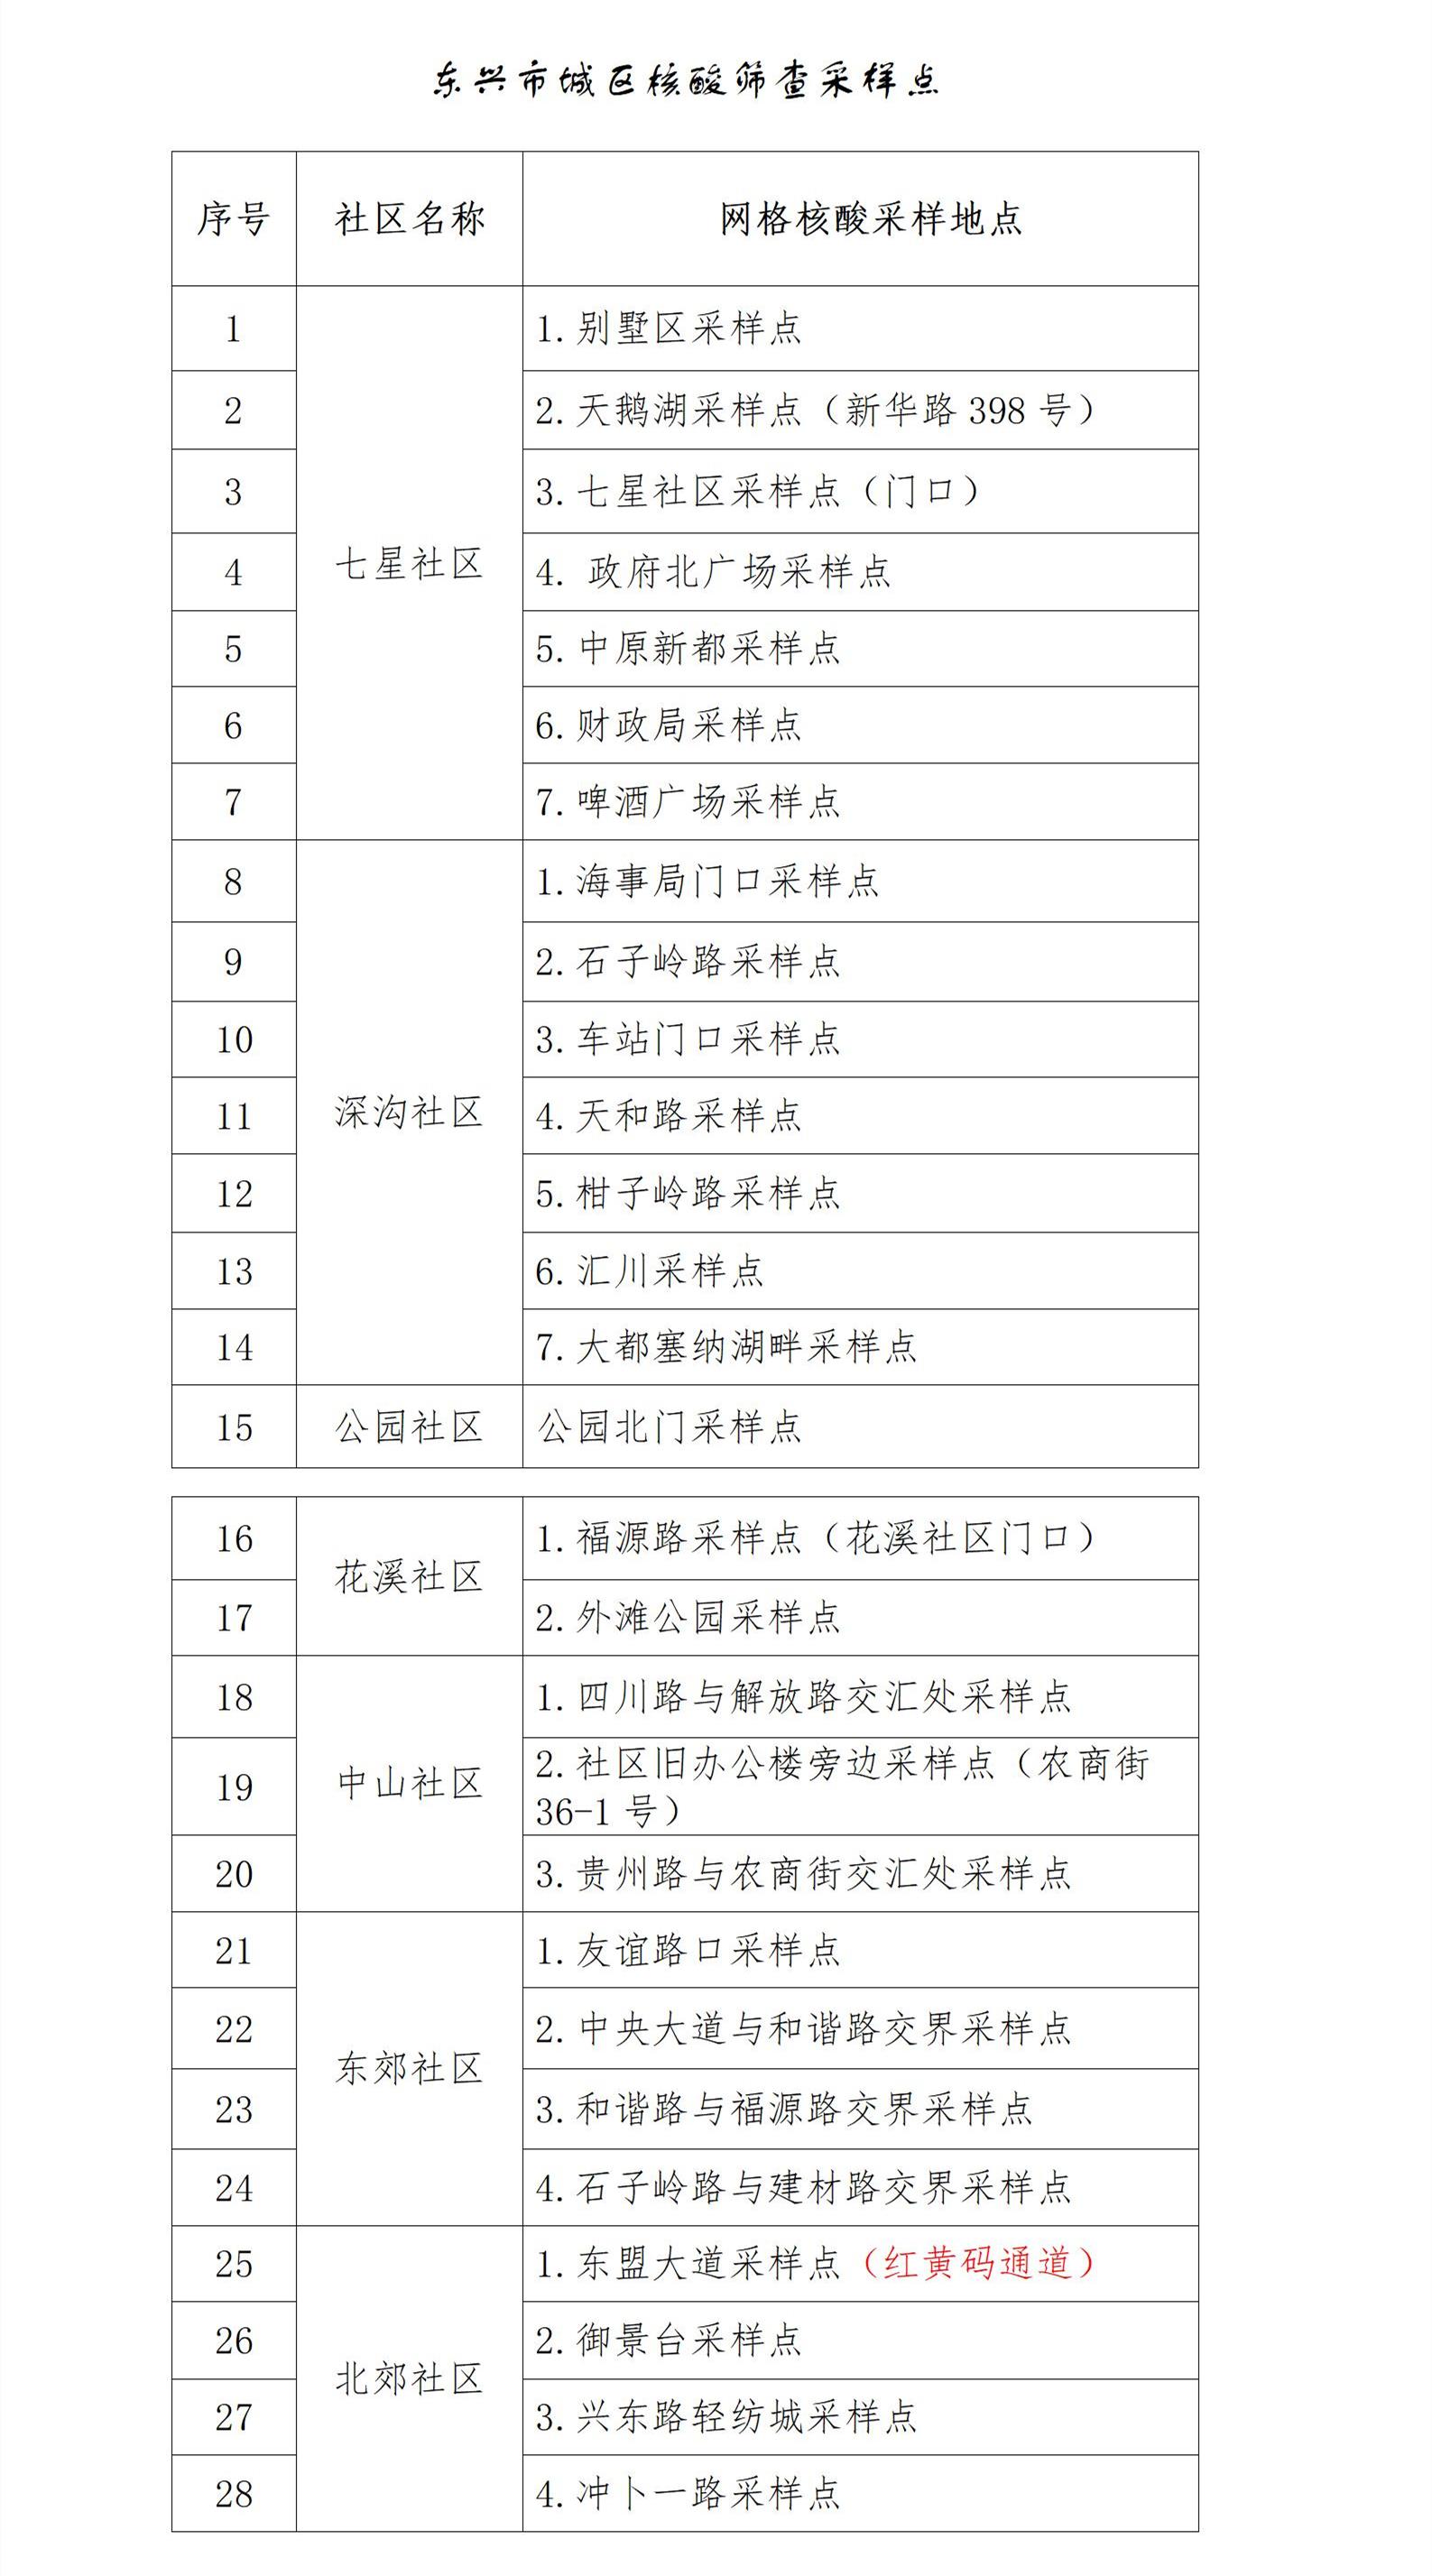 广西东兴市将于22日开展城区核酸筛查